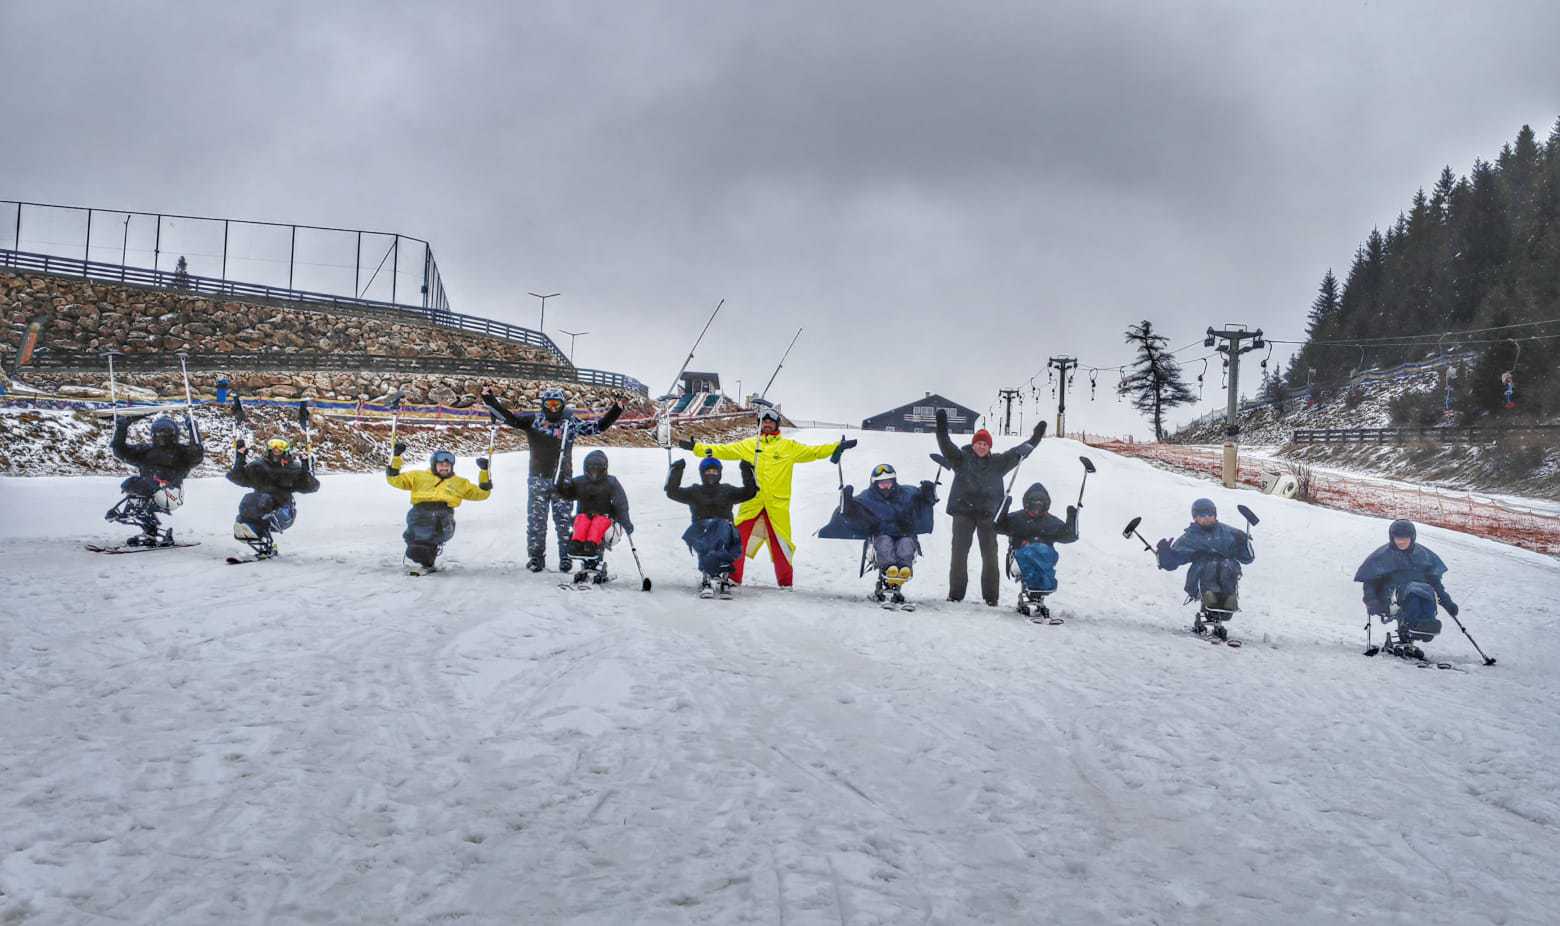 1000 de persoane cu dizabilităţi vor schia pe pârtiile din România, în această iarnă prin iniţiativa Caiac SMile. Debutul proiectului la Cheile Grădiştei